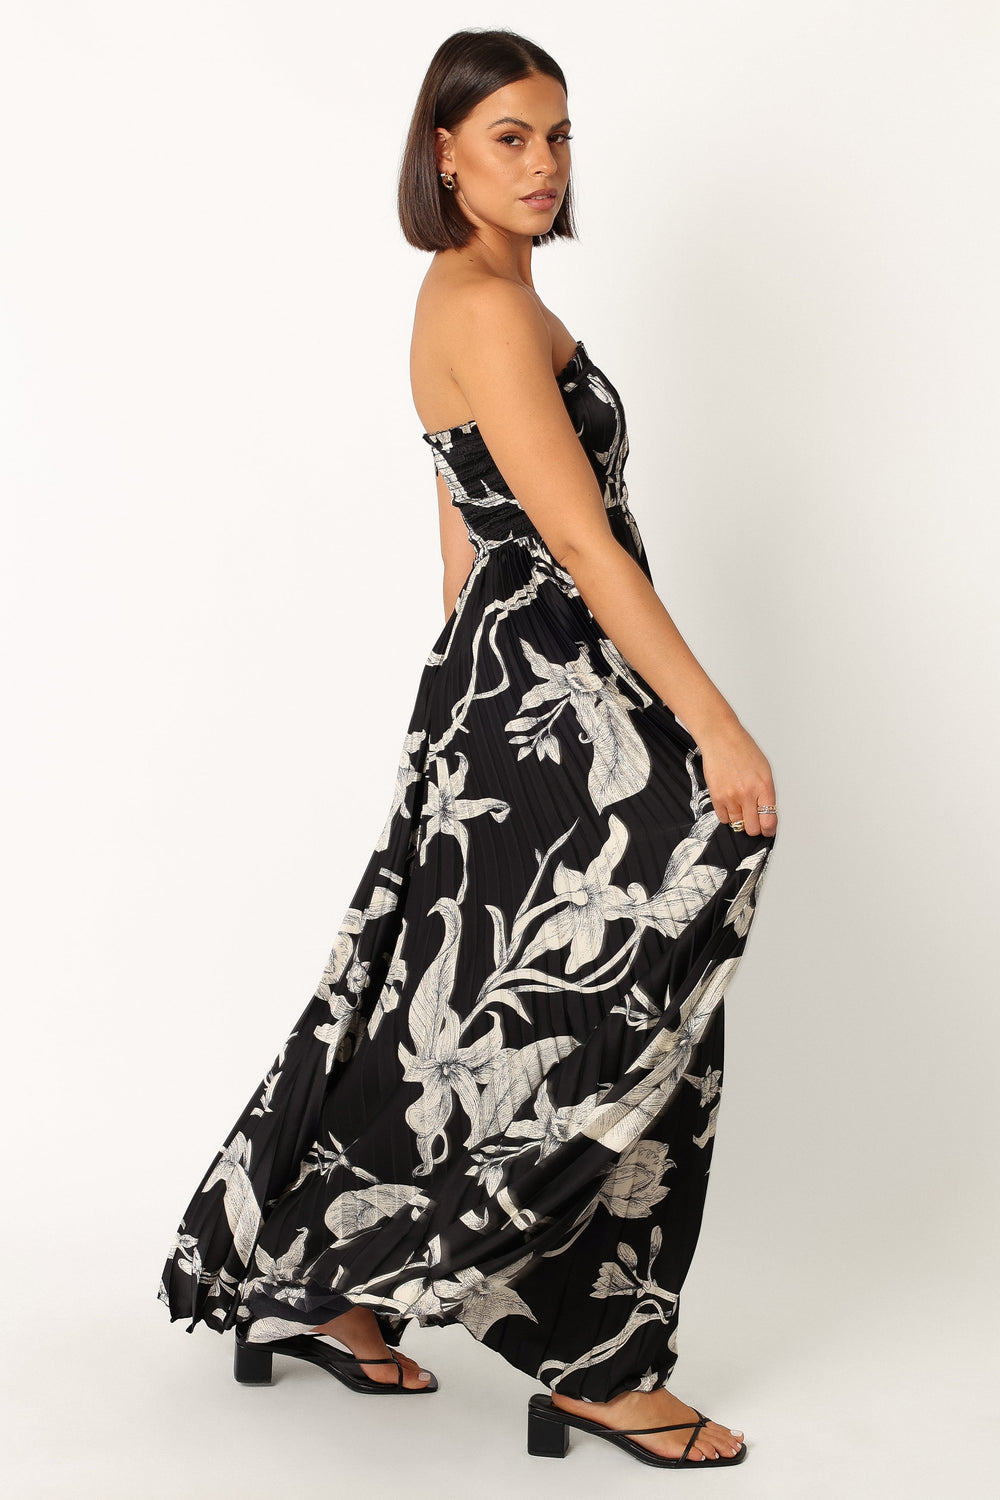 Angelique Strapless Maxi Dress - Black Floral - Petal & Pup USA